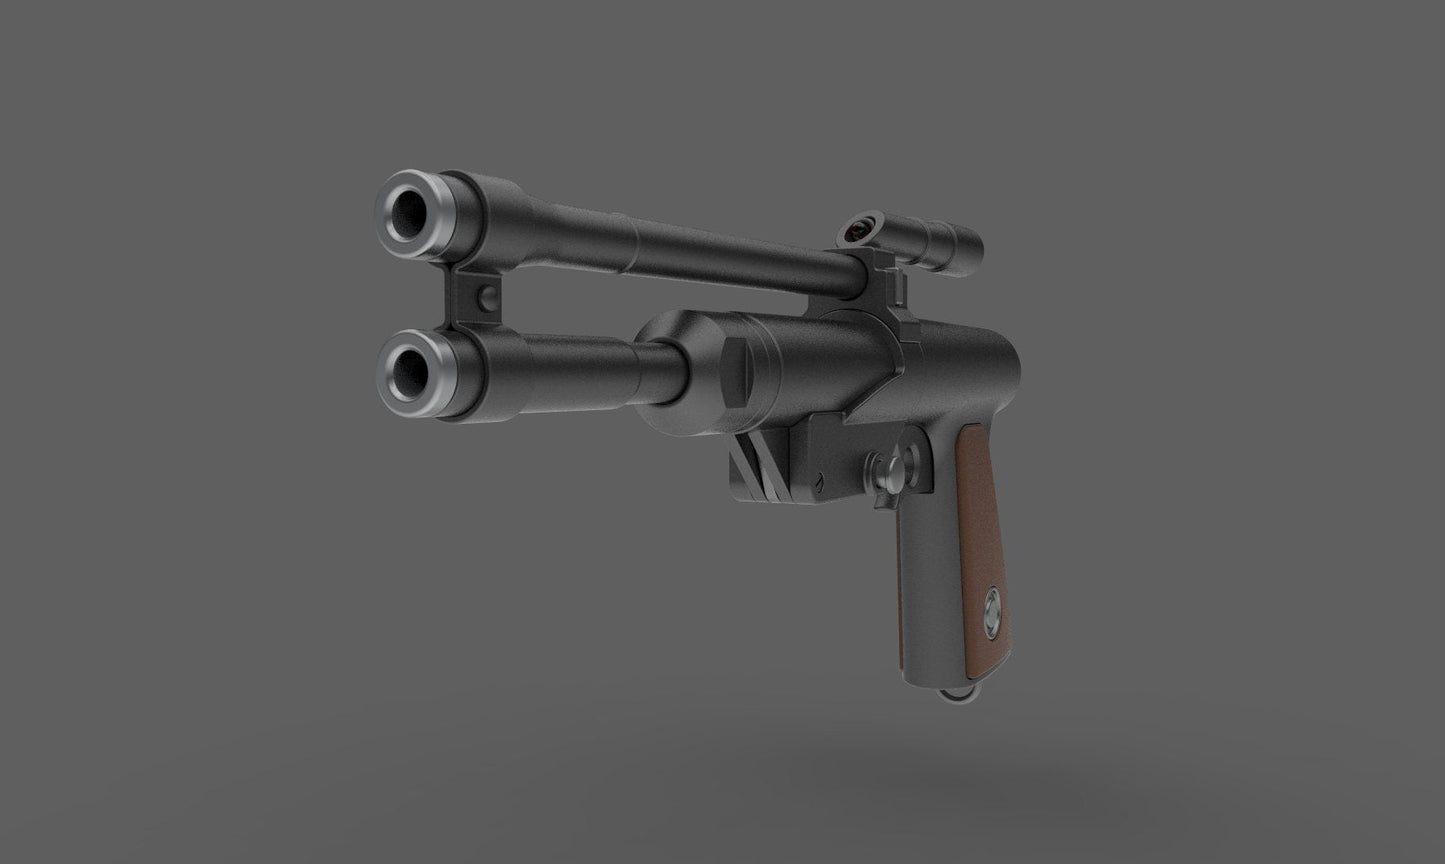 Blaster Pistol of Boba Fett | Star Wars Replica | Star Wars Props | Star Wars Cosplay - 3DPrintProps